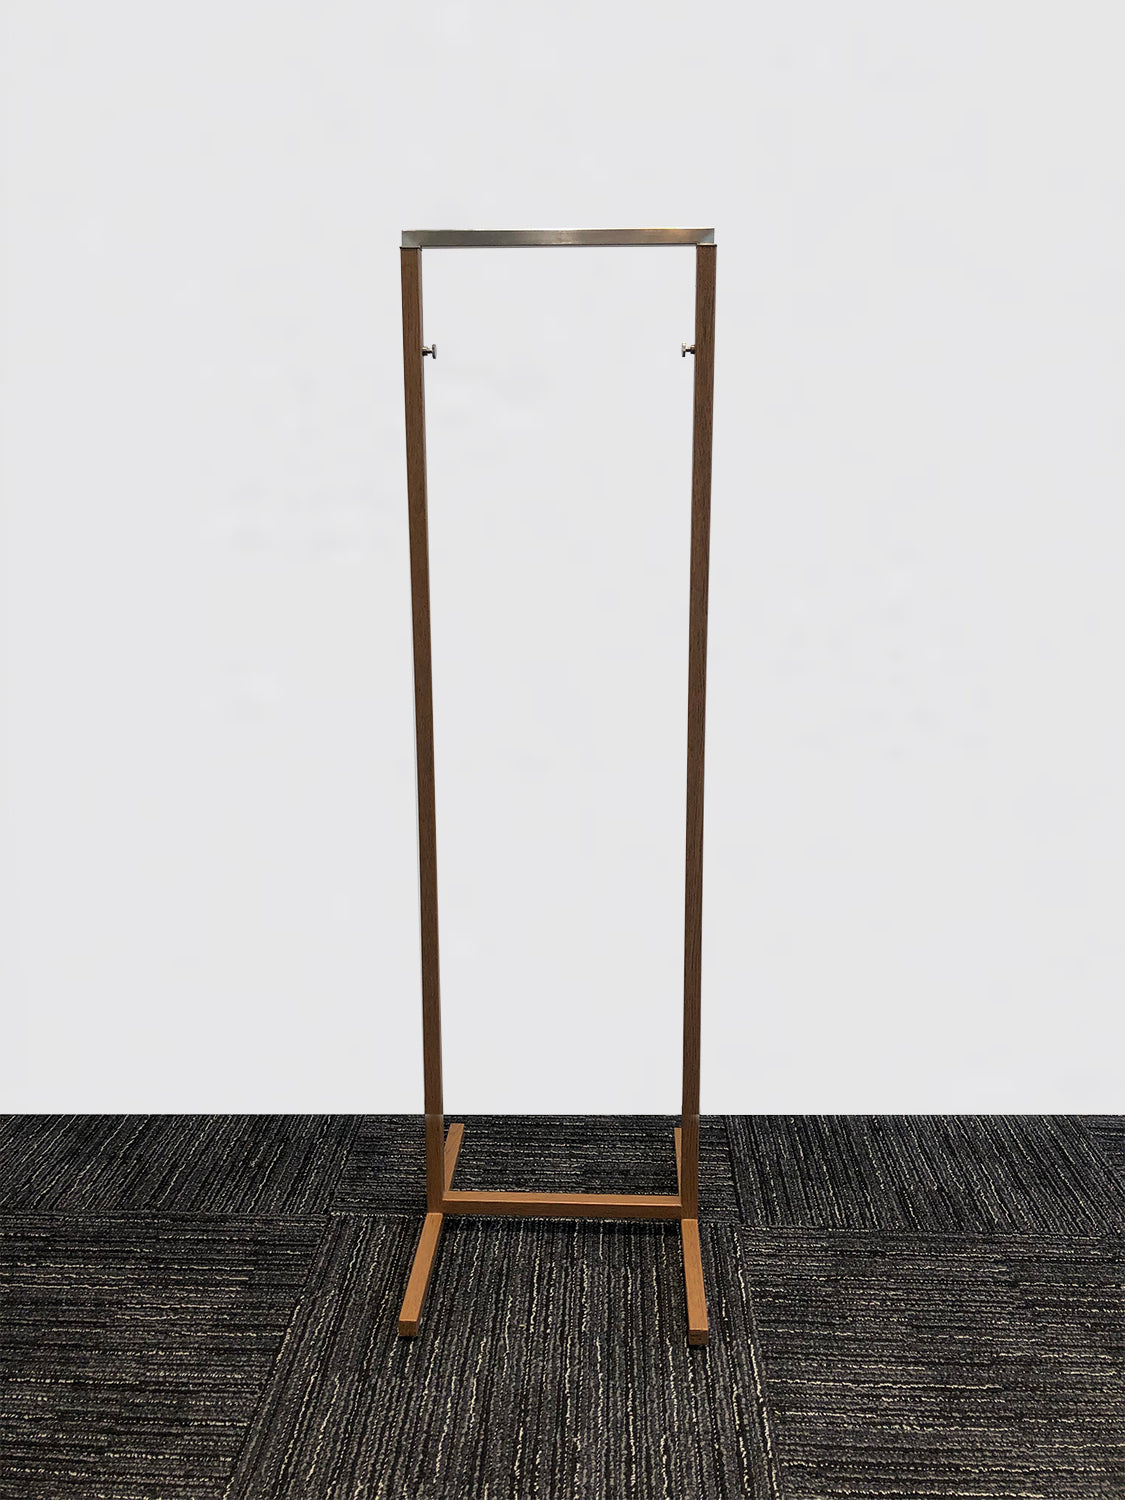 Hanger rack - Wood grain［Unused］